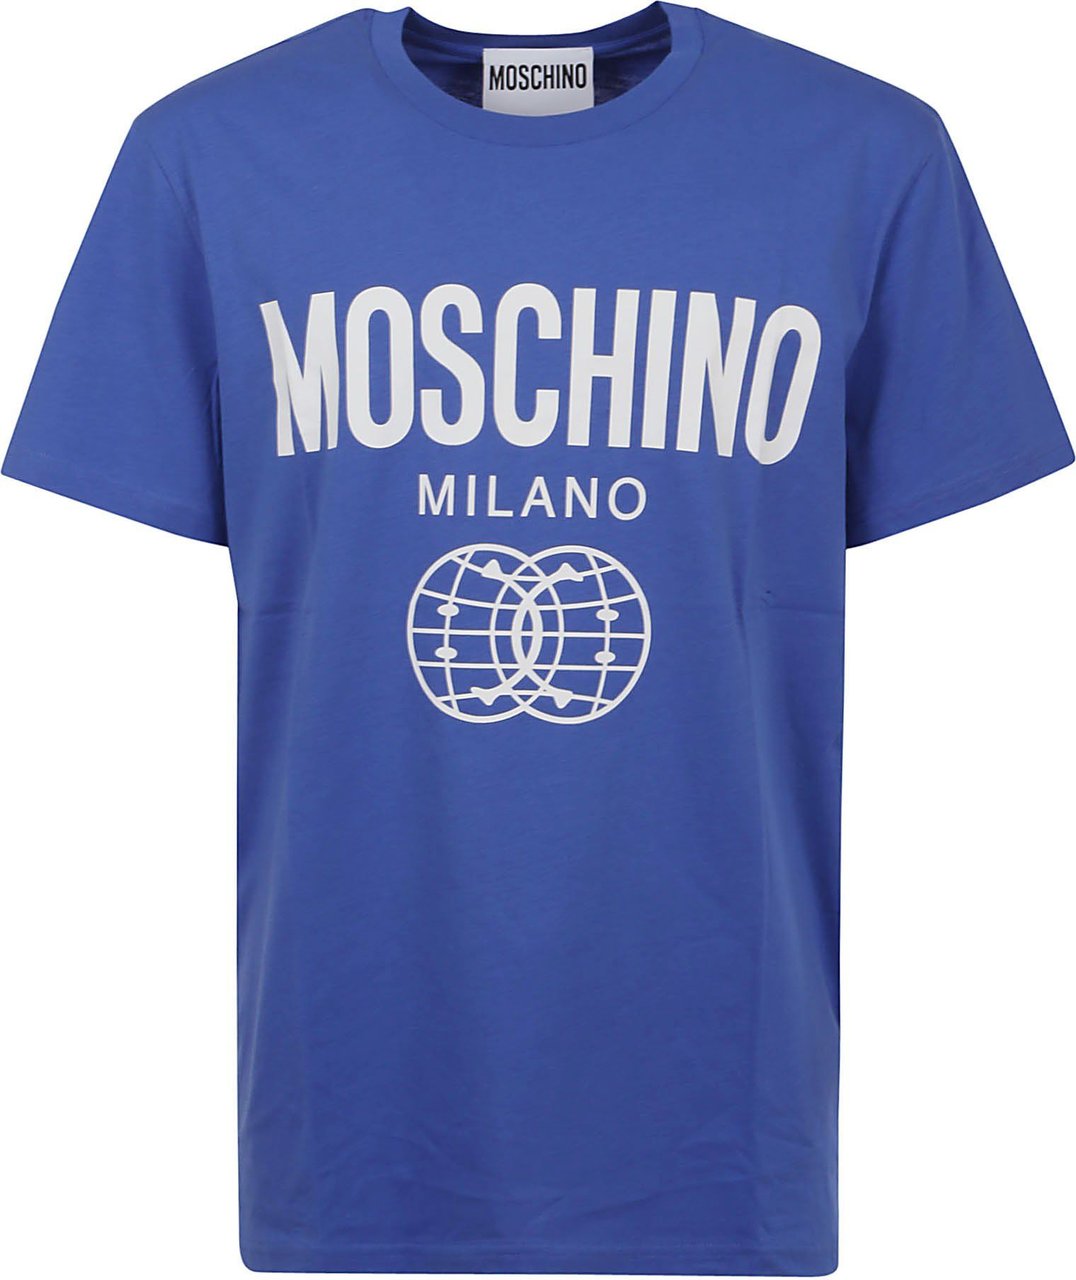 Moschino t-shirt Blauw